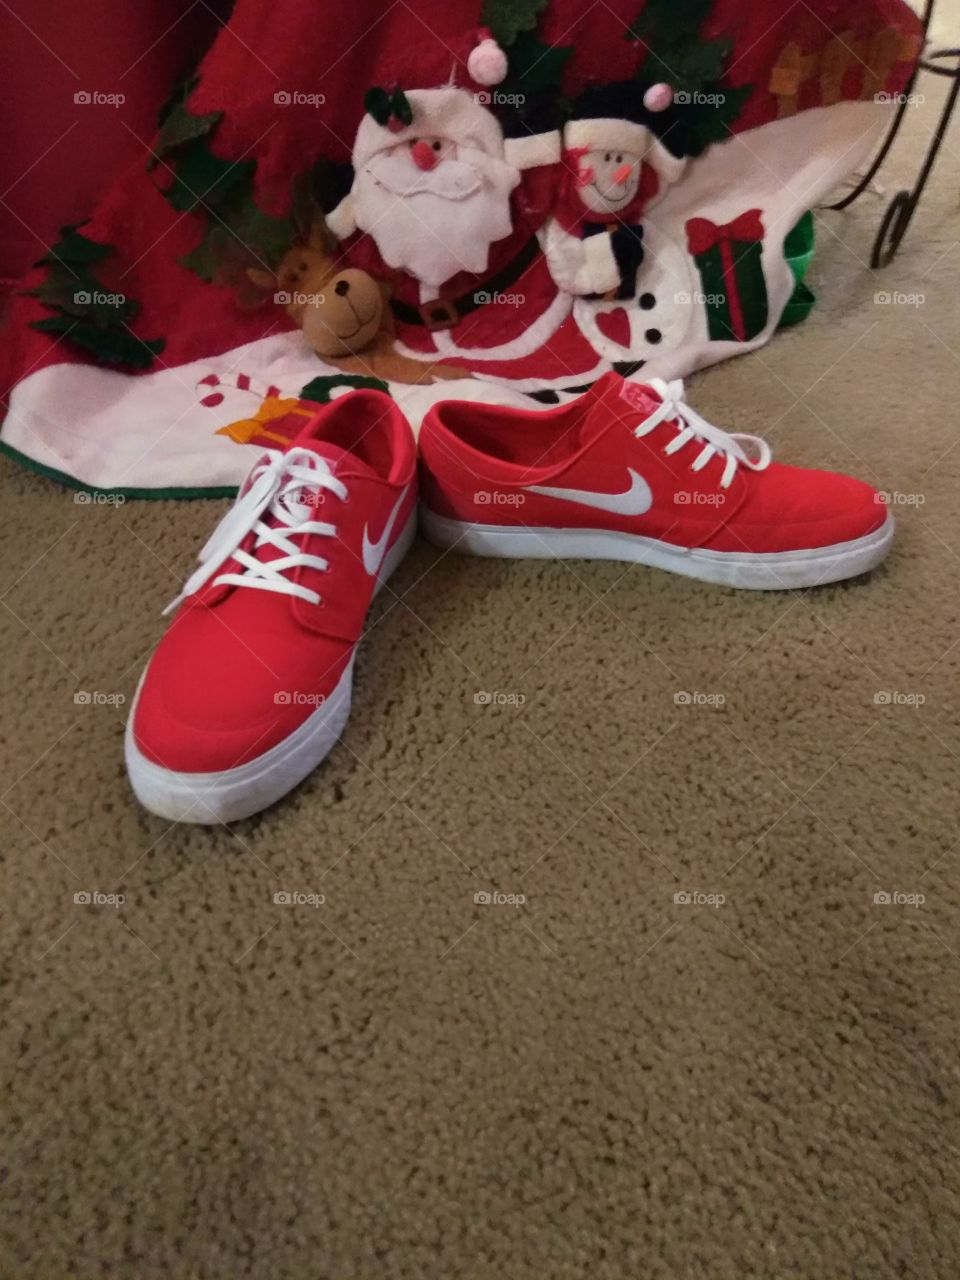 Santa's Left his Tennis Shoes